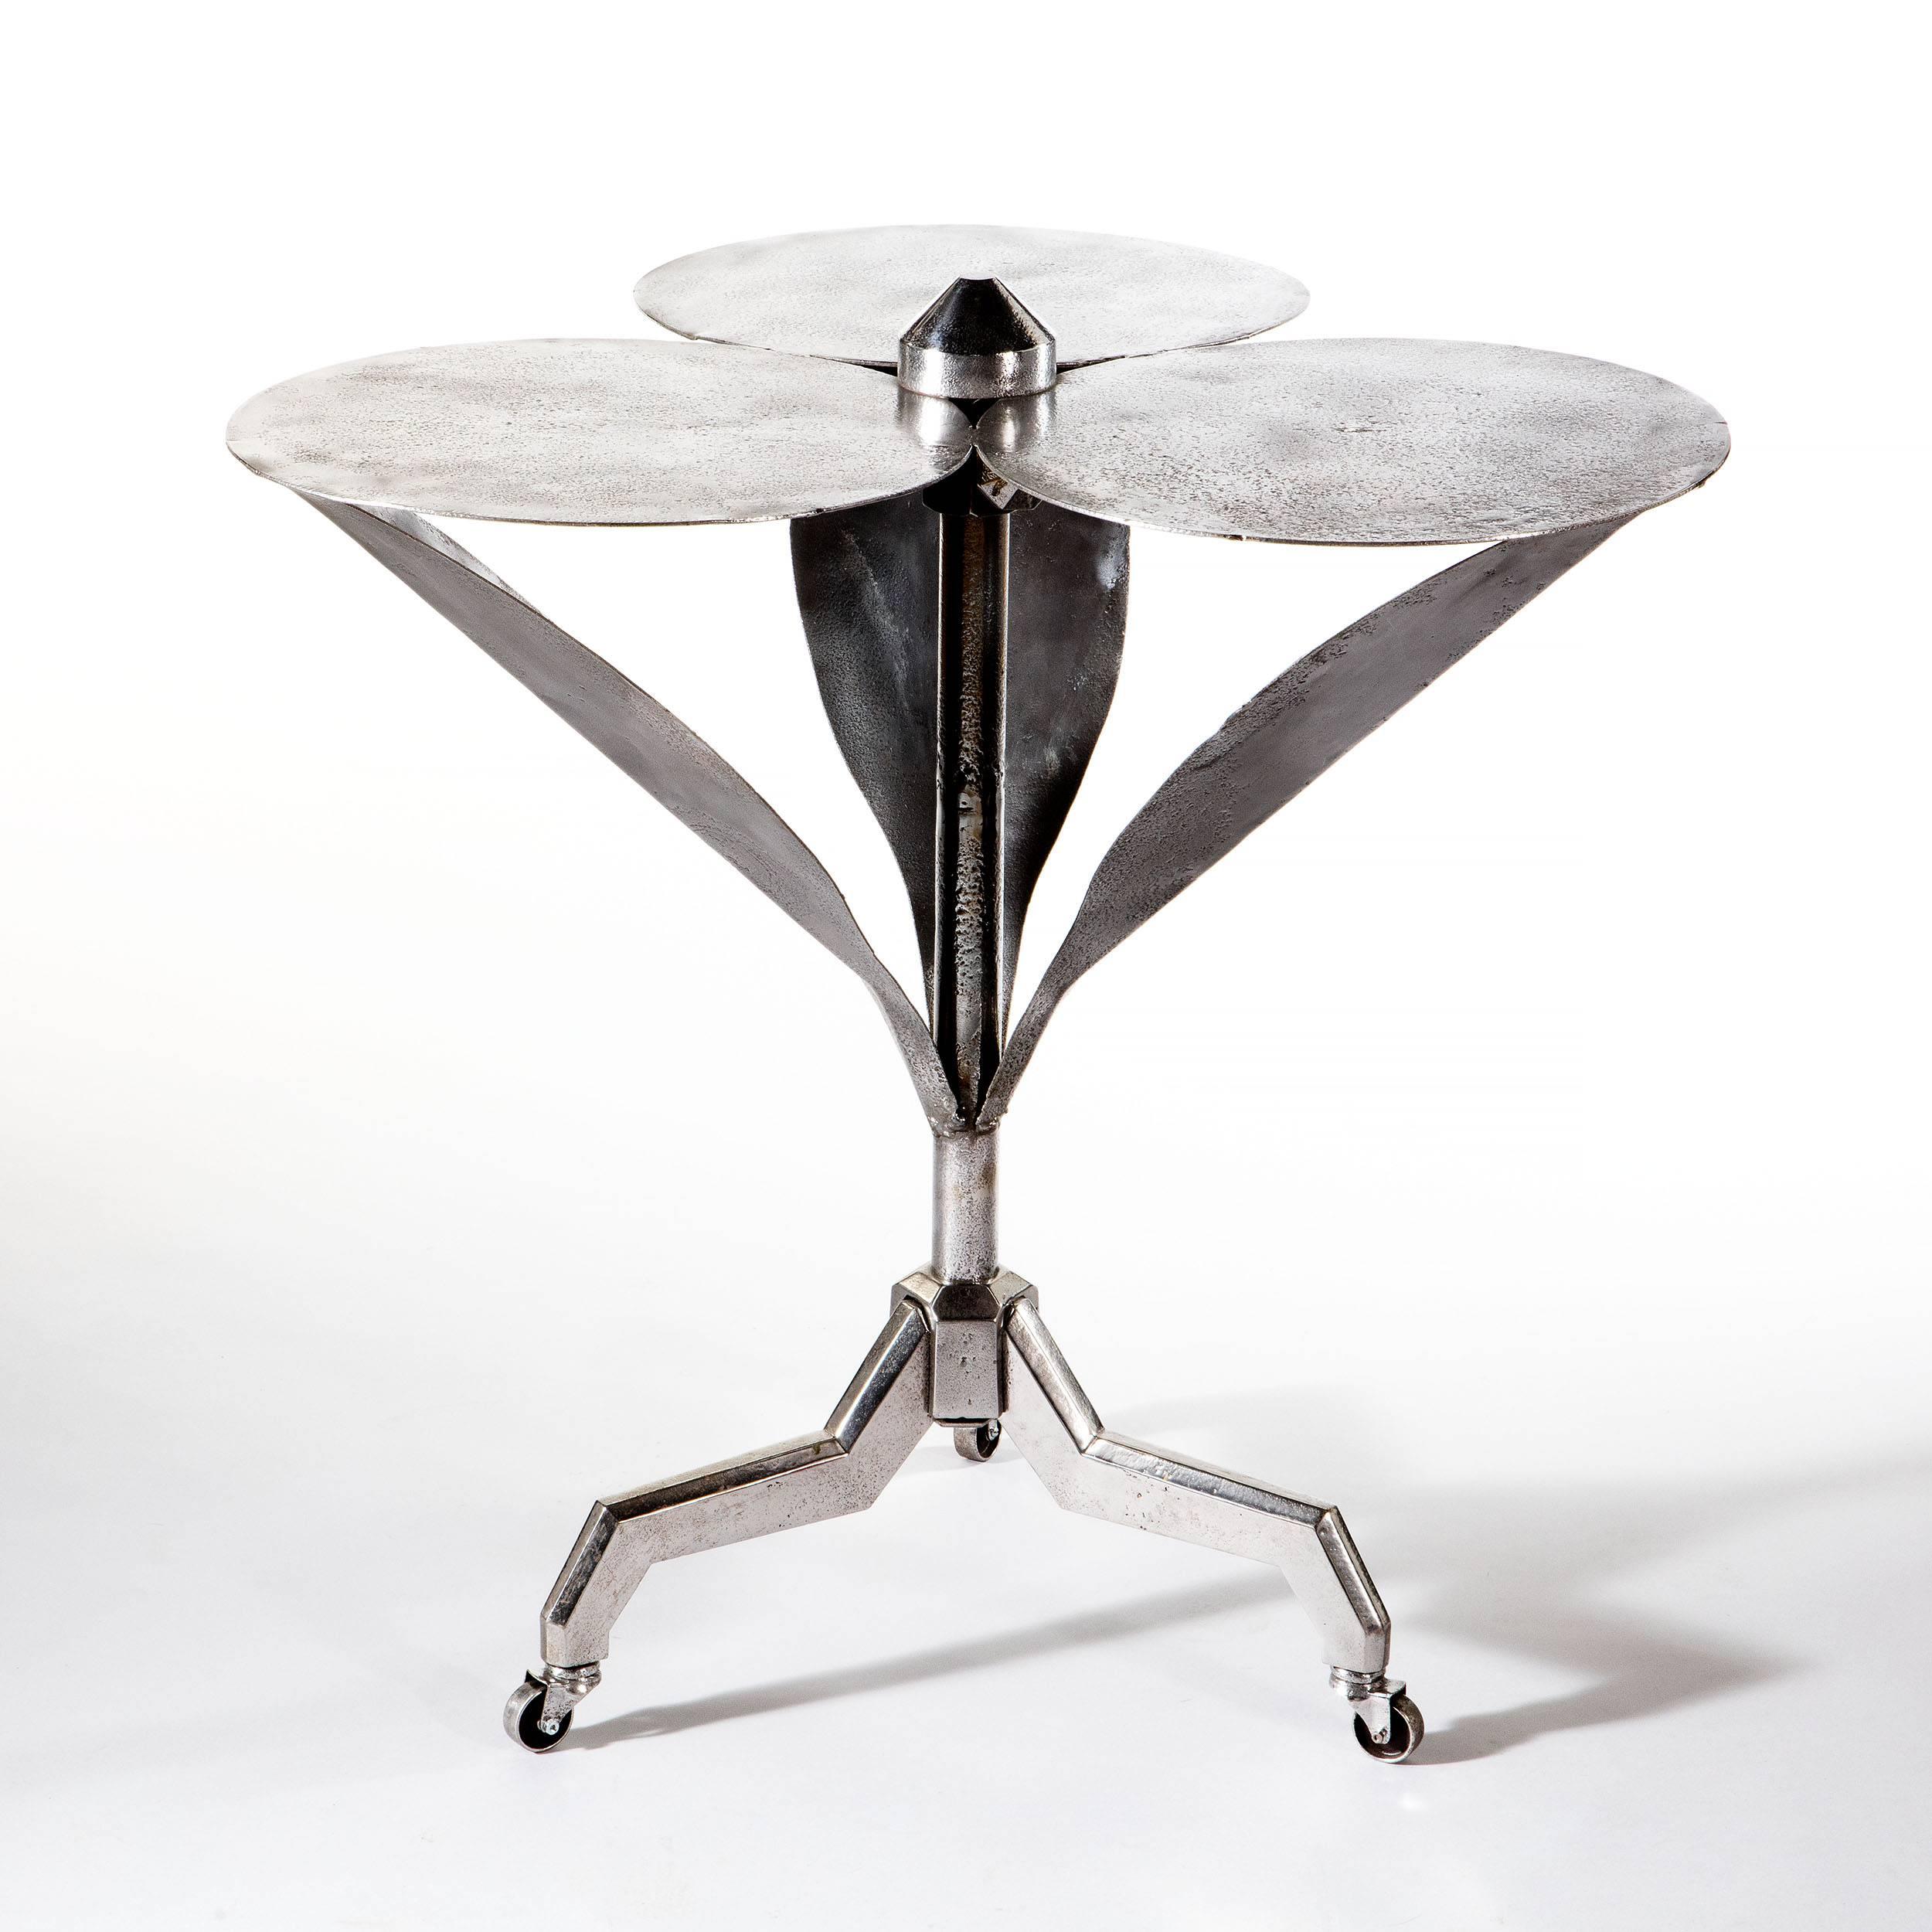 Gueridon-Beistelltisch aus hochglanzpoliertem Stahl mit den glänzenden Stahlblättern und Blütenblättern einer Blume.

Dieser Tisch stammt aus dem frühen 20. Jahrhundert, aus der Zeit des Art déco, und wurde wahrscheinlich in Frankreich hergestellt.